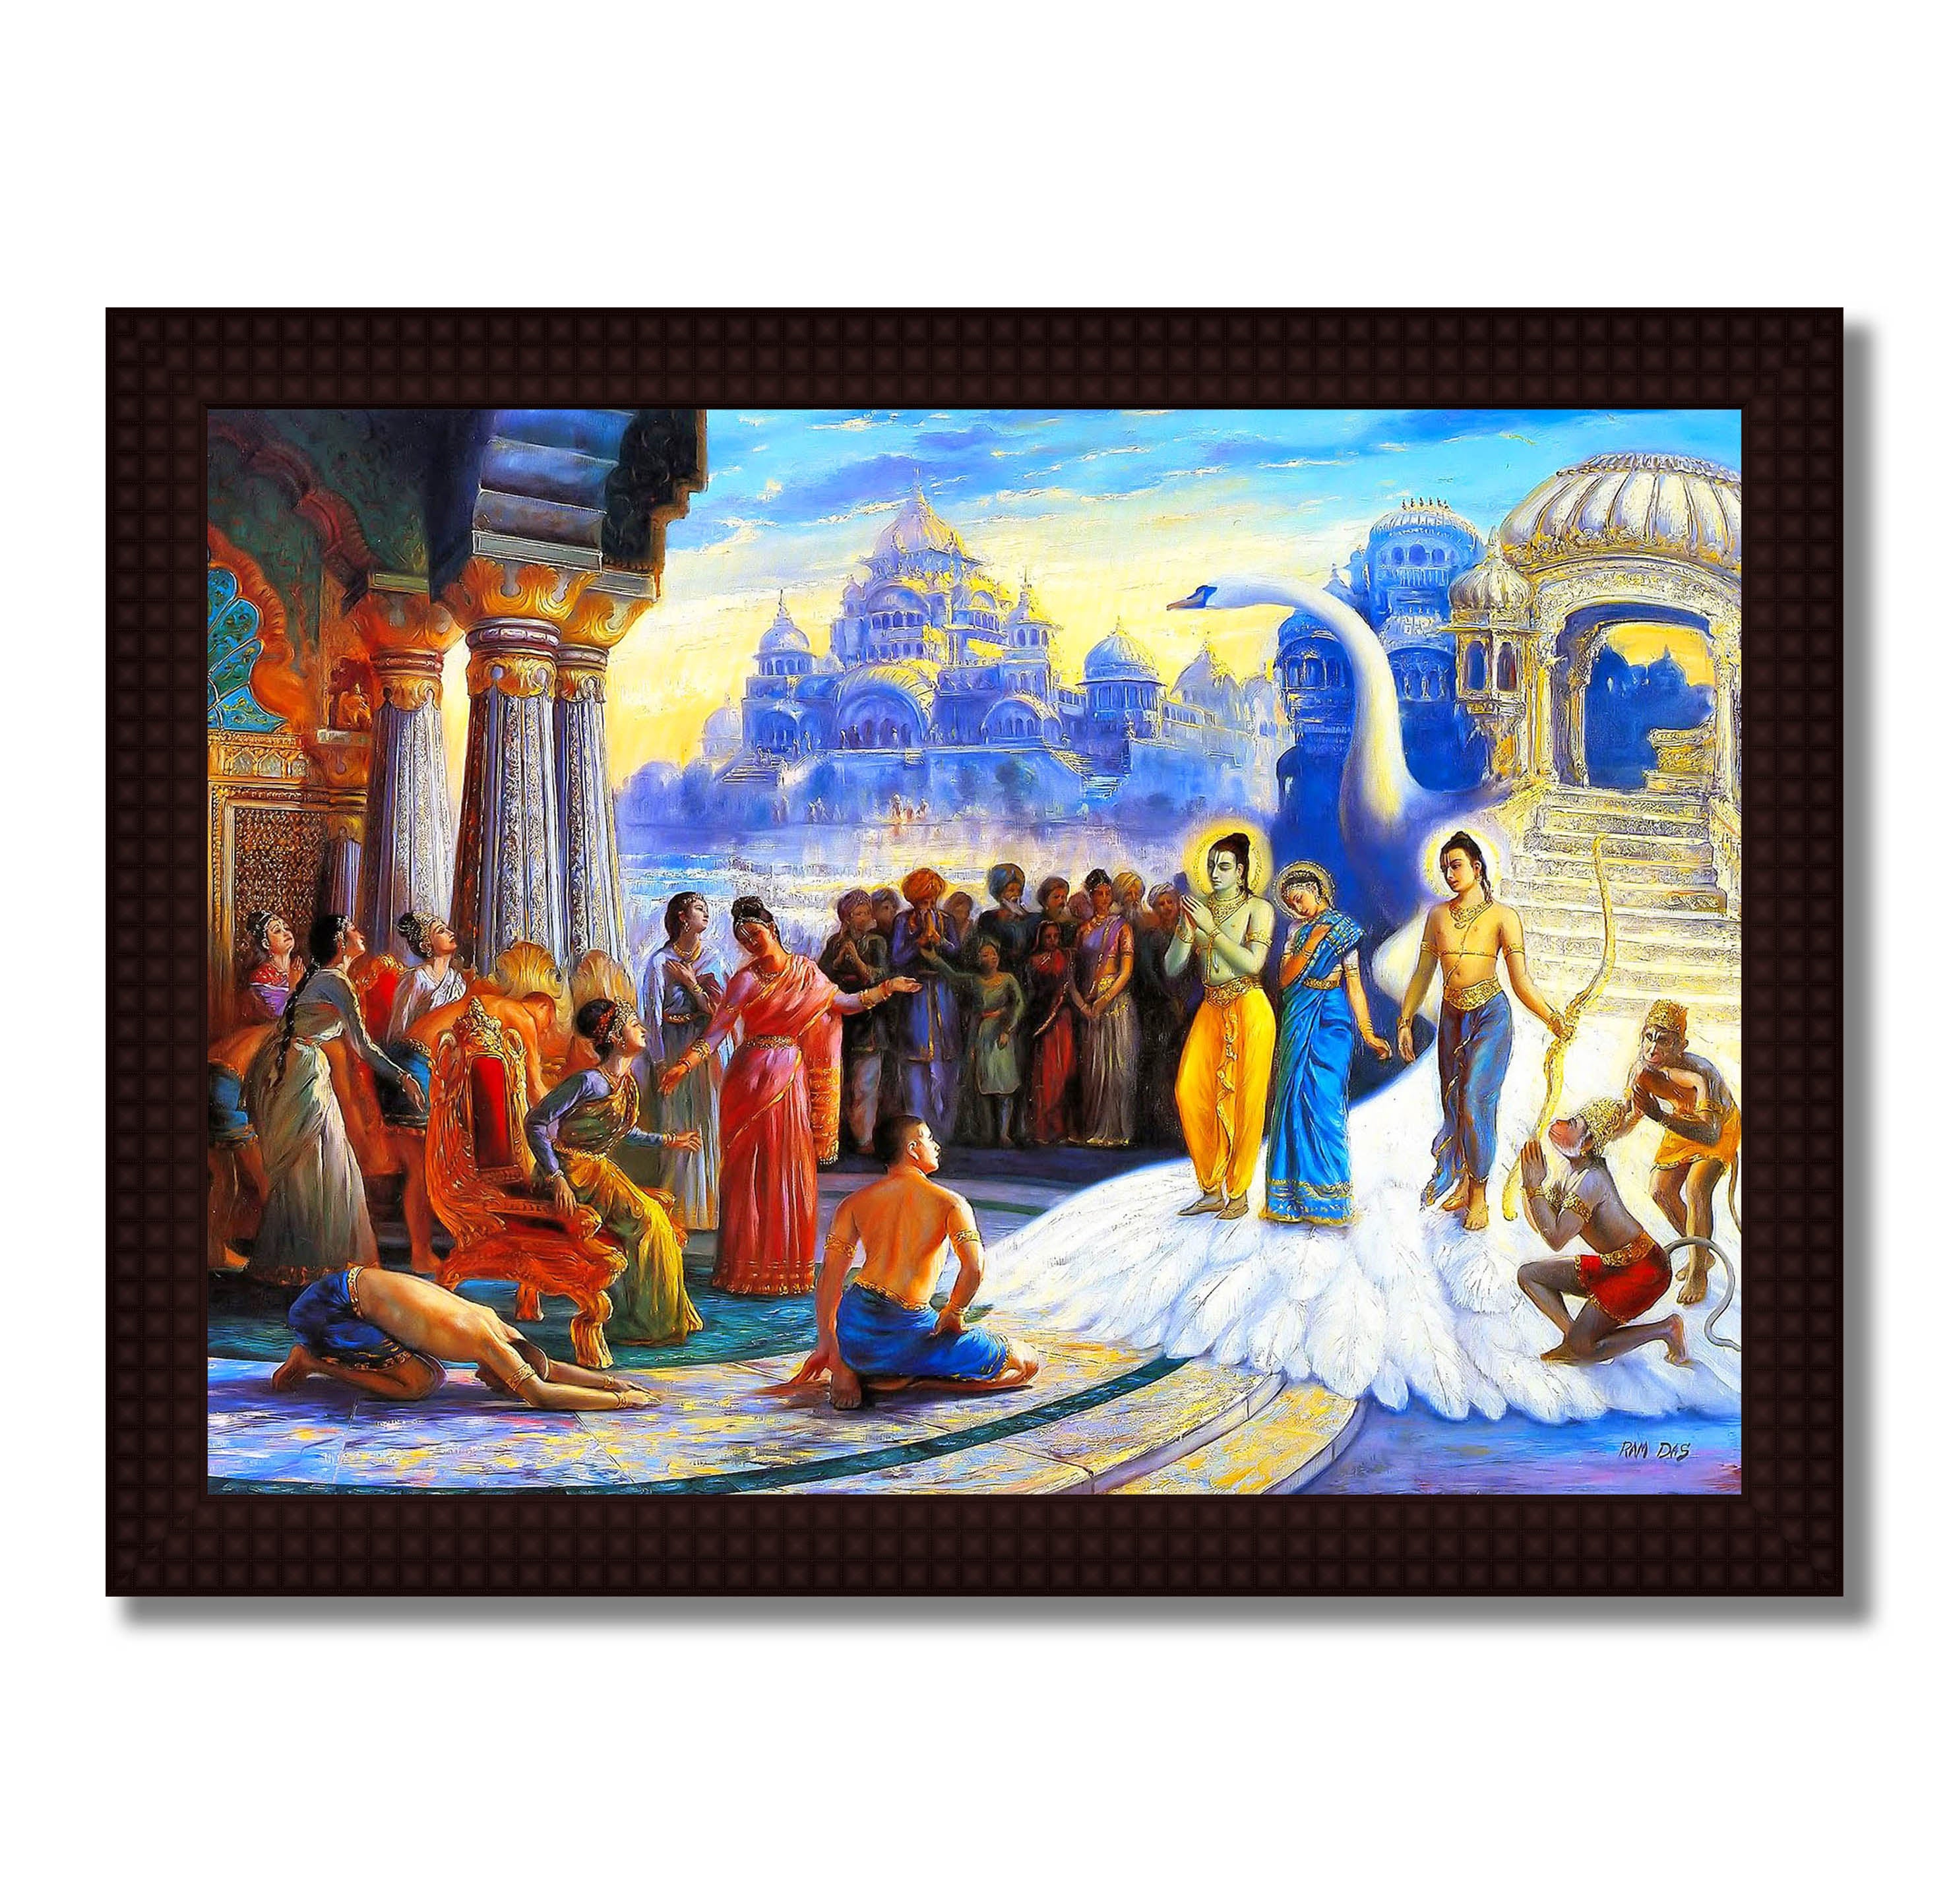 Lord Ram & Sita Return to Ayodhya